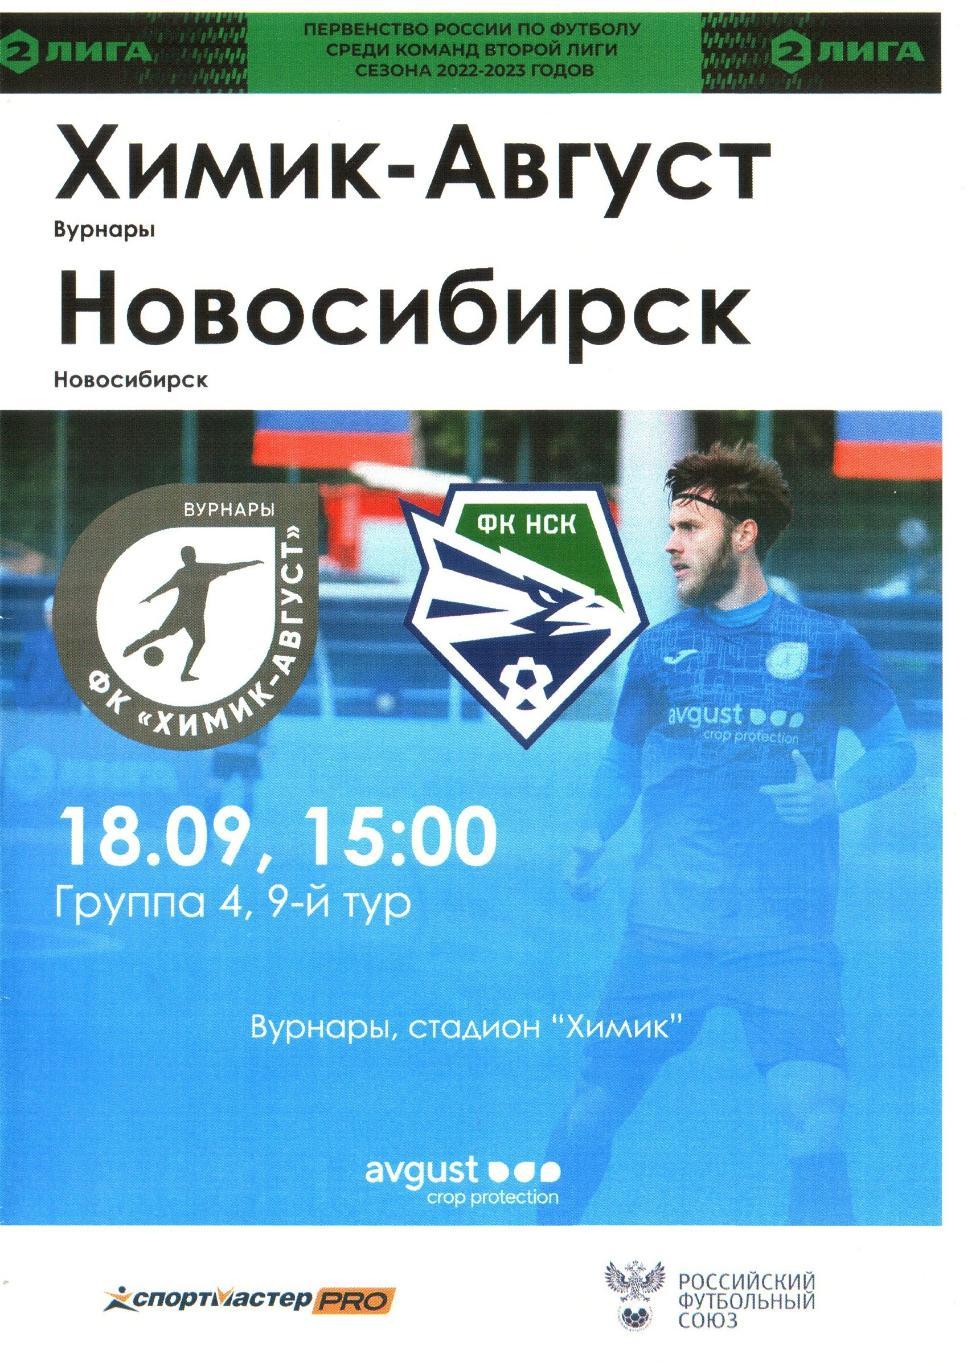 Химик-Август (Вурнары) - ФК Новосибирск (Новосибирск) - 18.09.2022